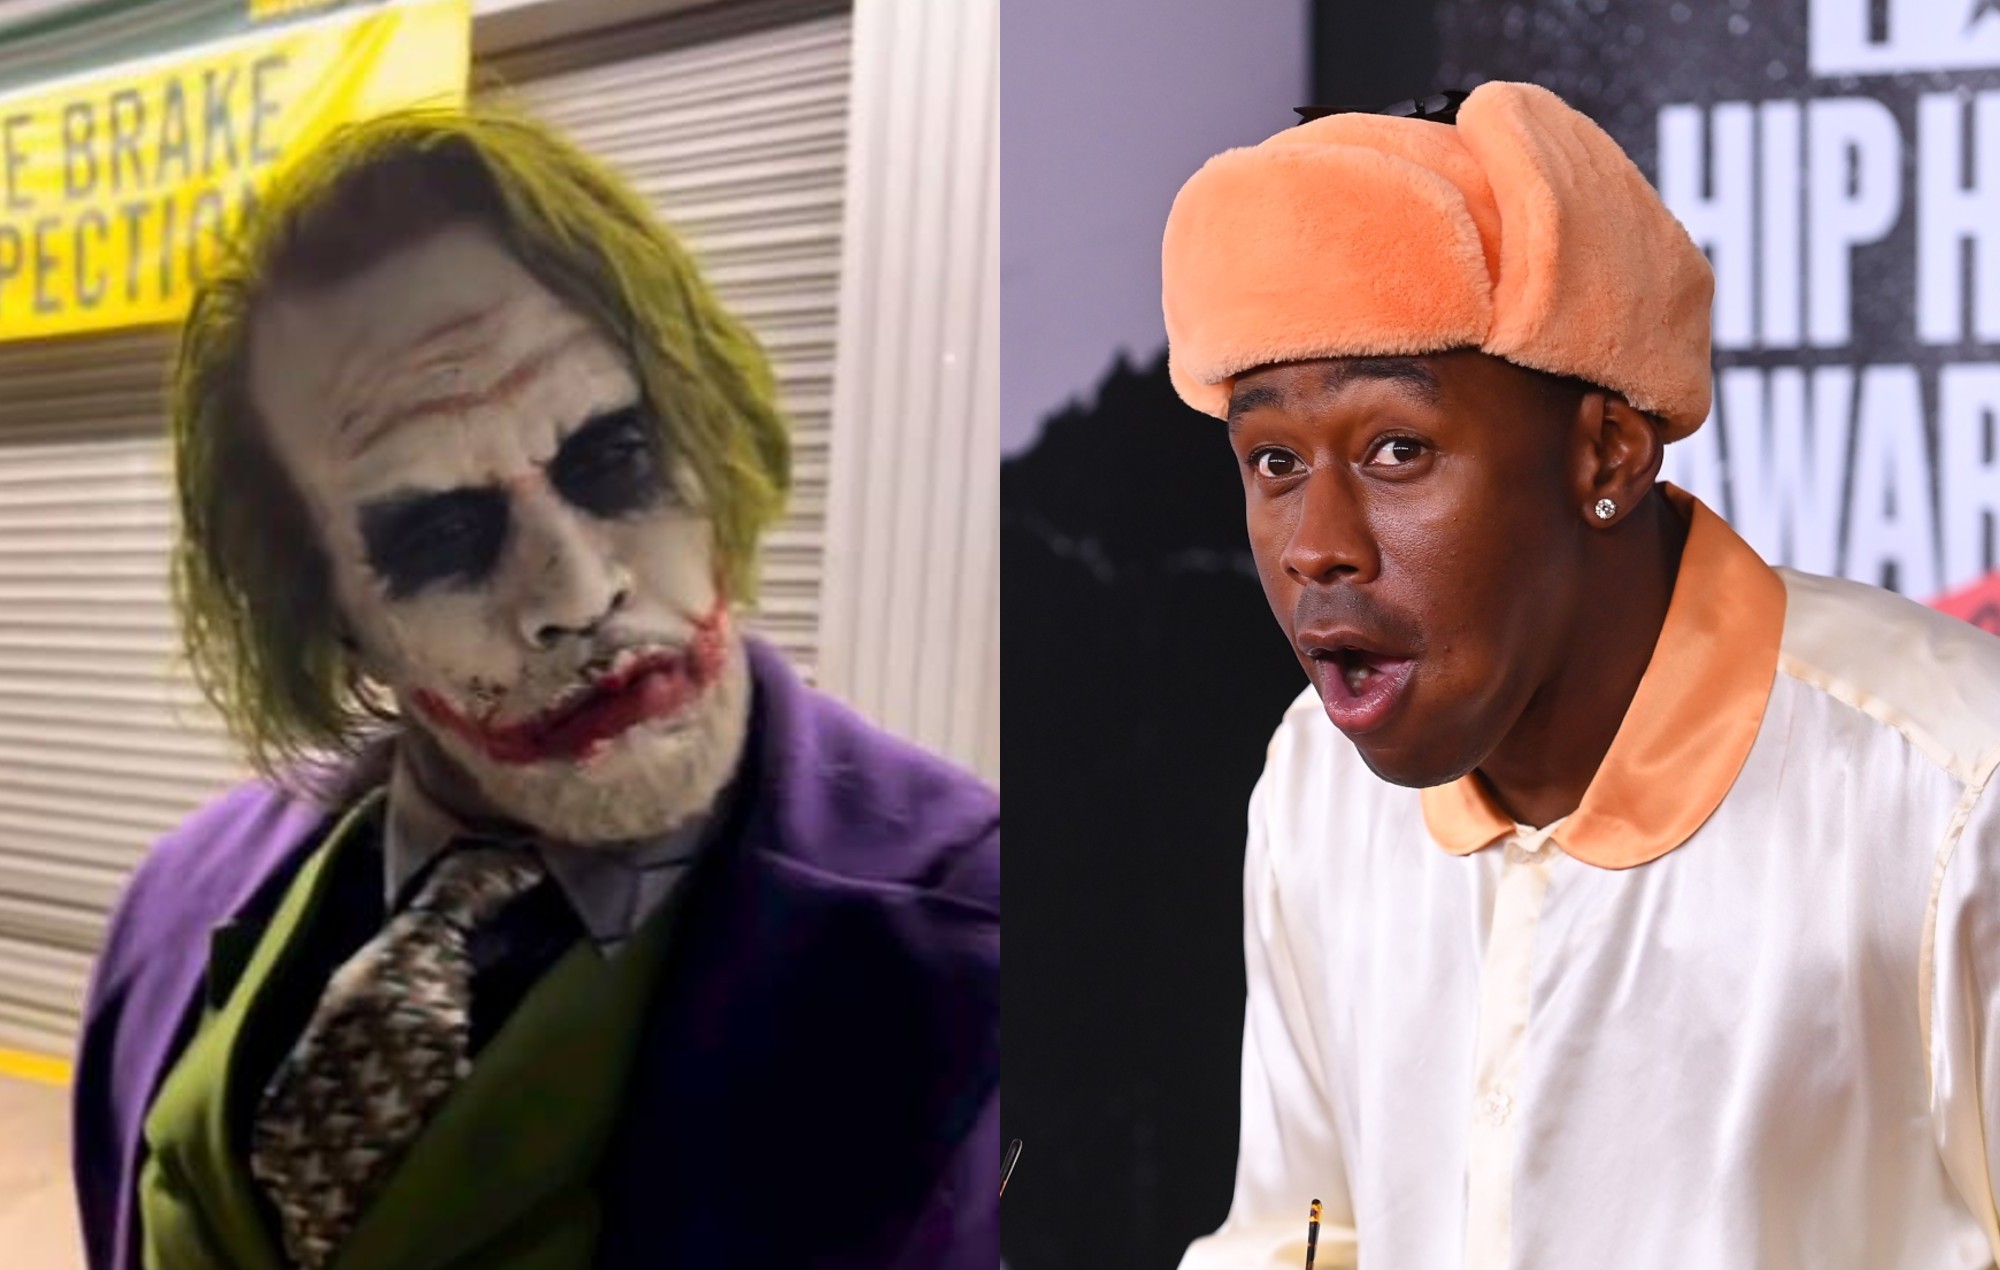 Diddy "secuestra" Halloween como el Joker de Heath Ledger - se topa con Tyler, the Creator